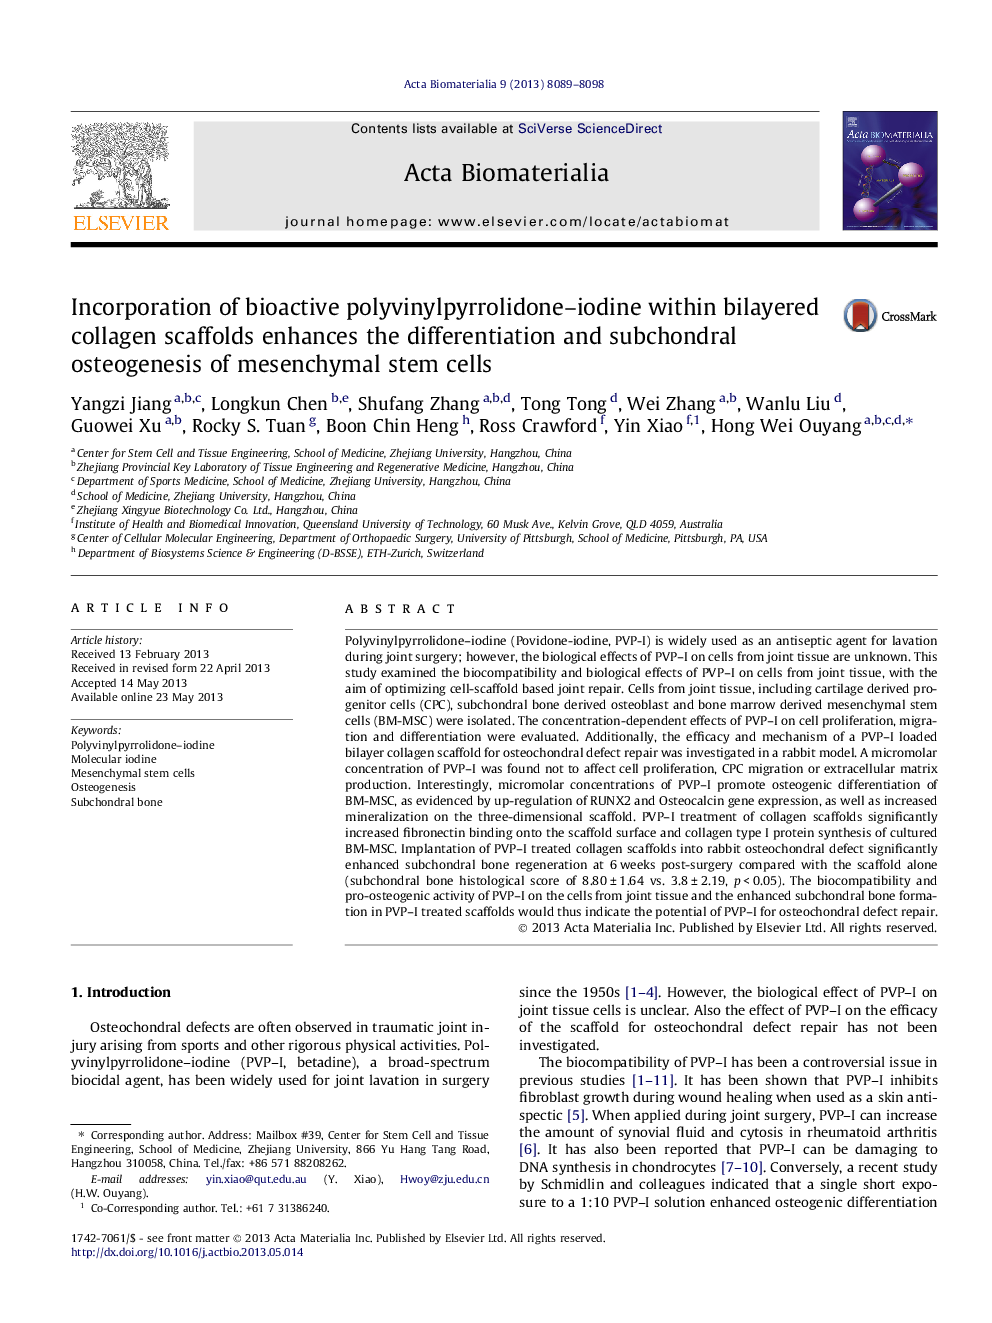 ترکیب پلی وینیل پریرولیدون-ید باکتریایی در داربست های کلاژن دوجداره، باعث افزایش استئوژنیزاسیون تمایز و زیرشوندری سلول های بنیادی مزانشیمی می شود 